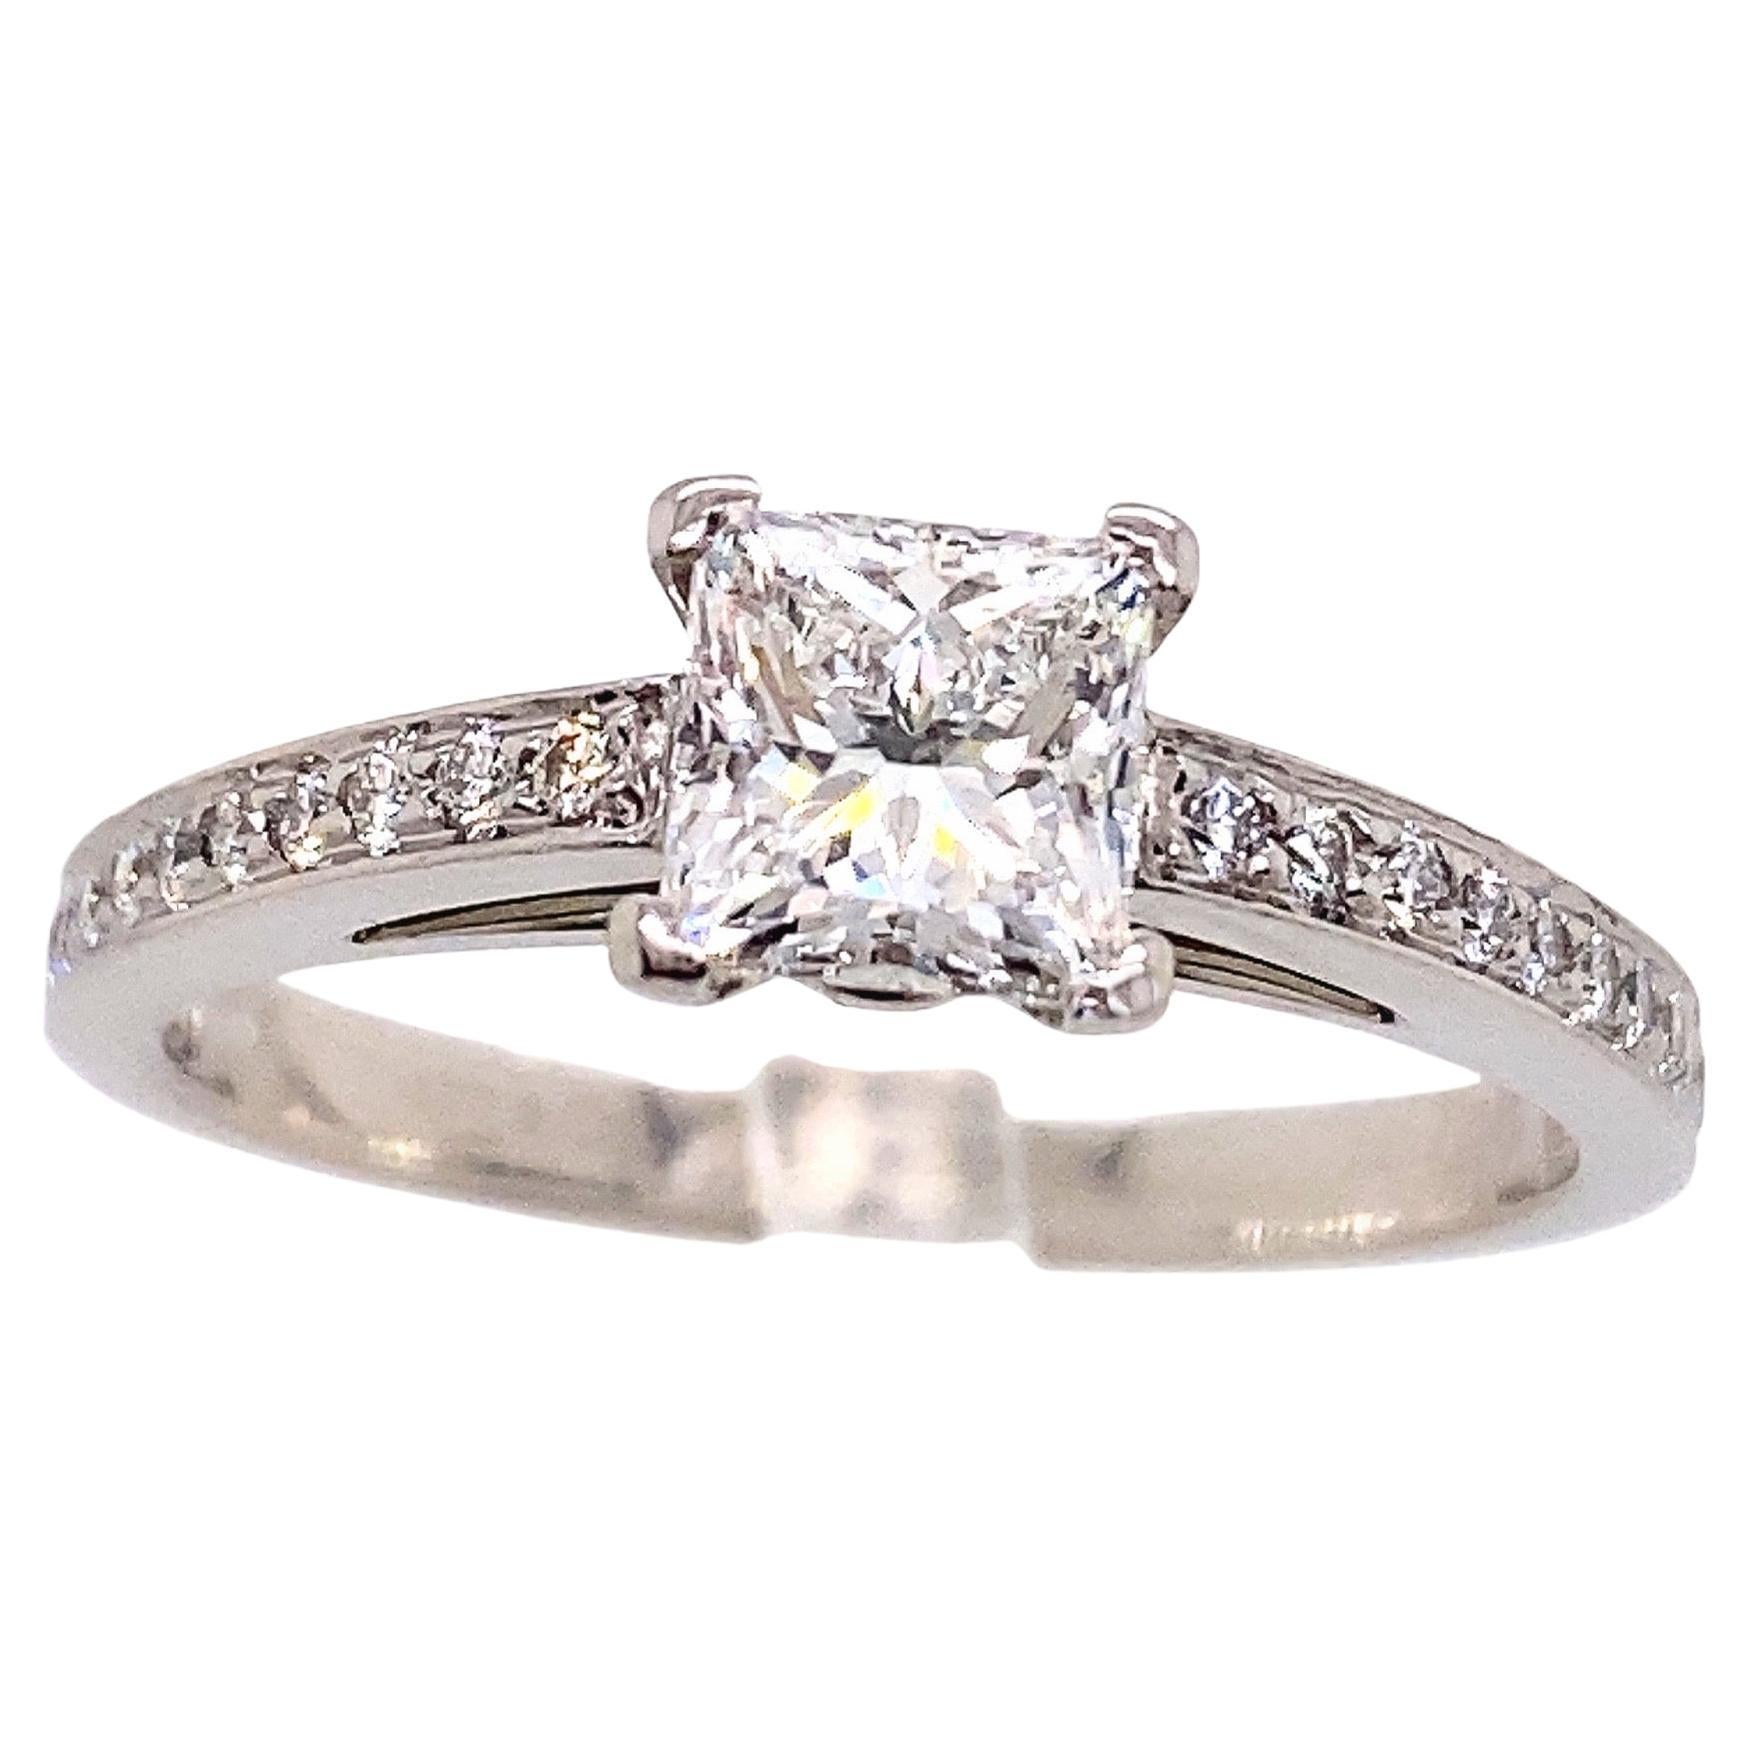 Tiffany & Co. Bague de fiançailles Grace Princess avec certificat en diamants de 0,89 carat poids total